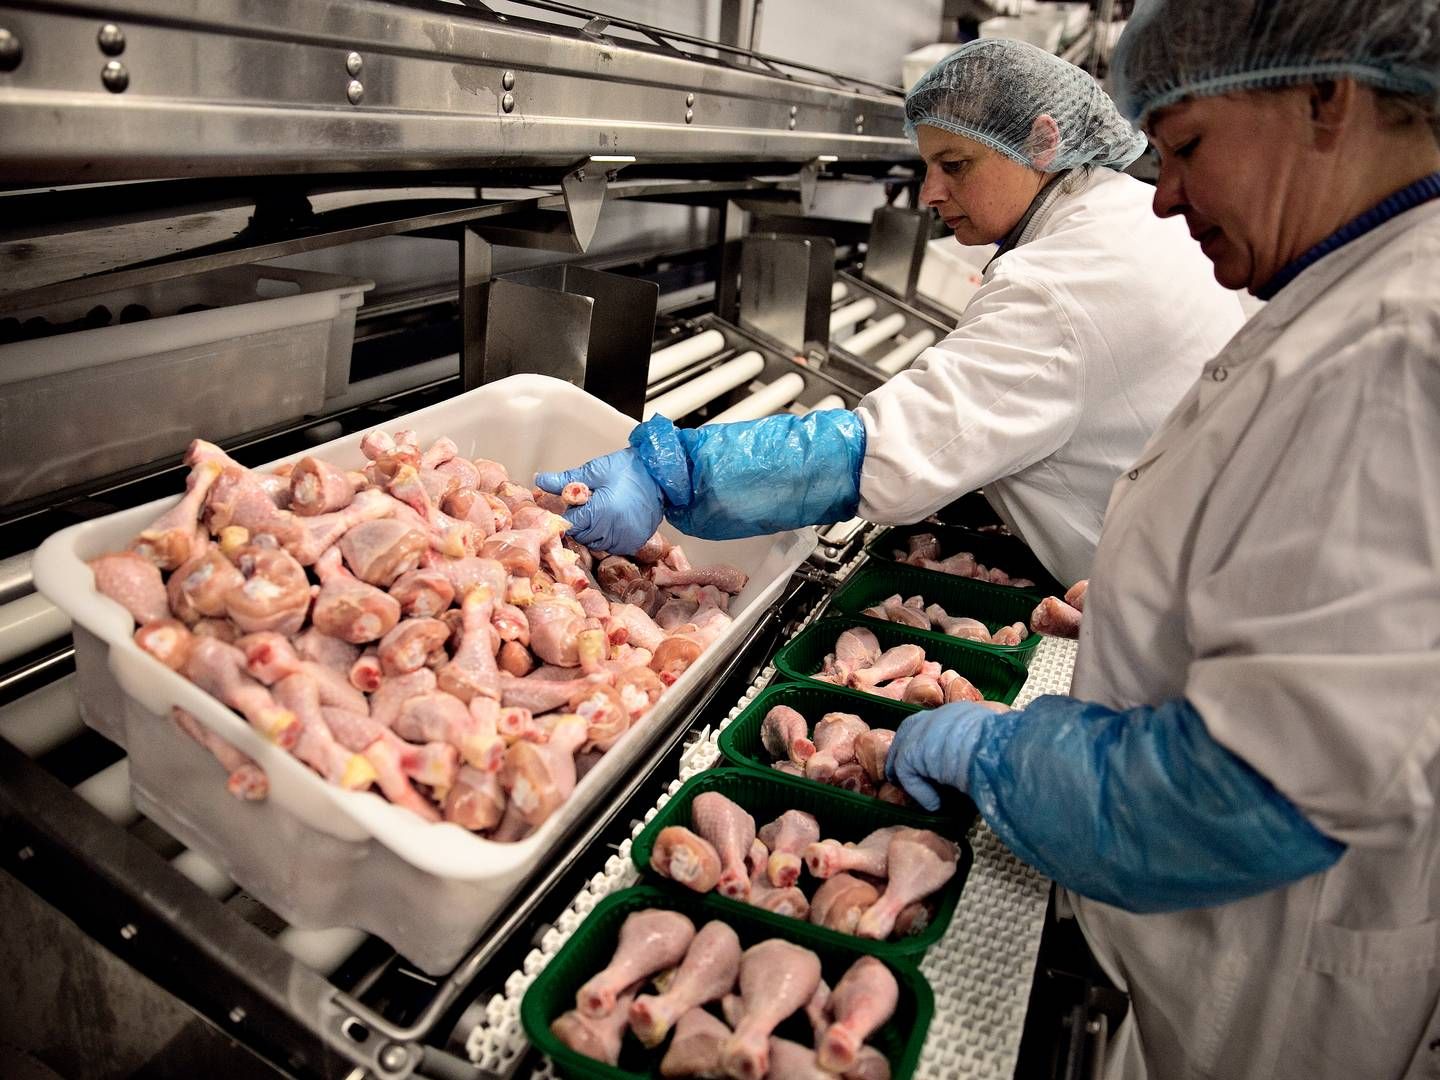 Kyllingeproducenten Danpo har svært ved at få afsat hele kyllingen og må forsøge at sælge den i udlandet. "Og der er efterspørgslen efter langsomvoksende ikke til stede,” fortæller adm. direktør Kasper Lenbroch. | Photo: Joachim Adrian